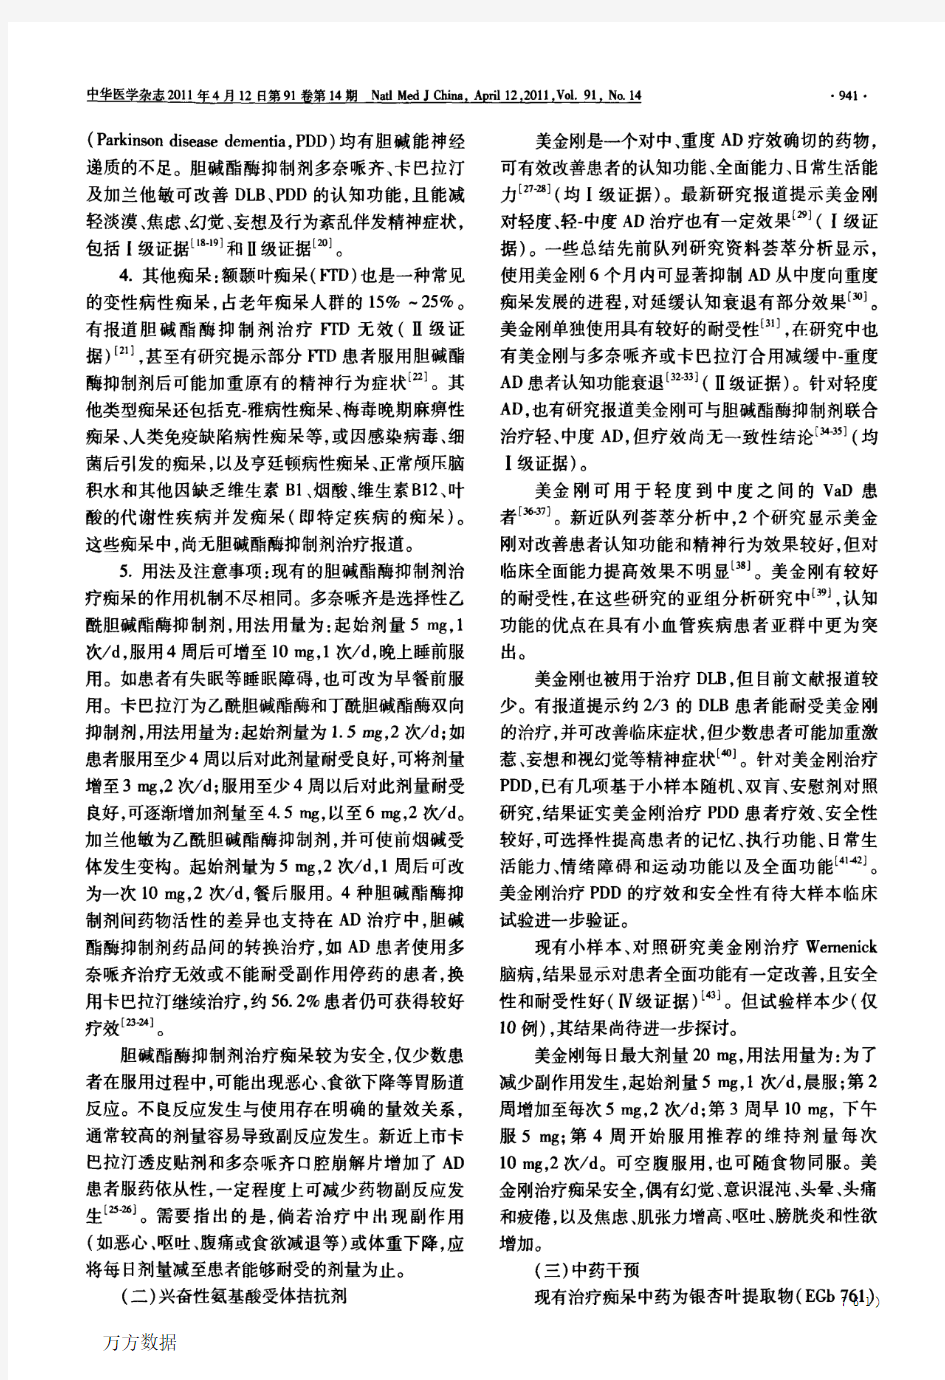 2011年中国痴呆与认知障碍诊治指南(五)：痴呆治疗